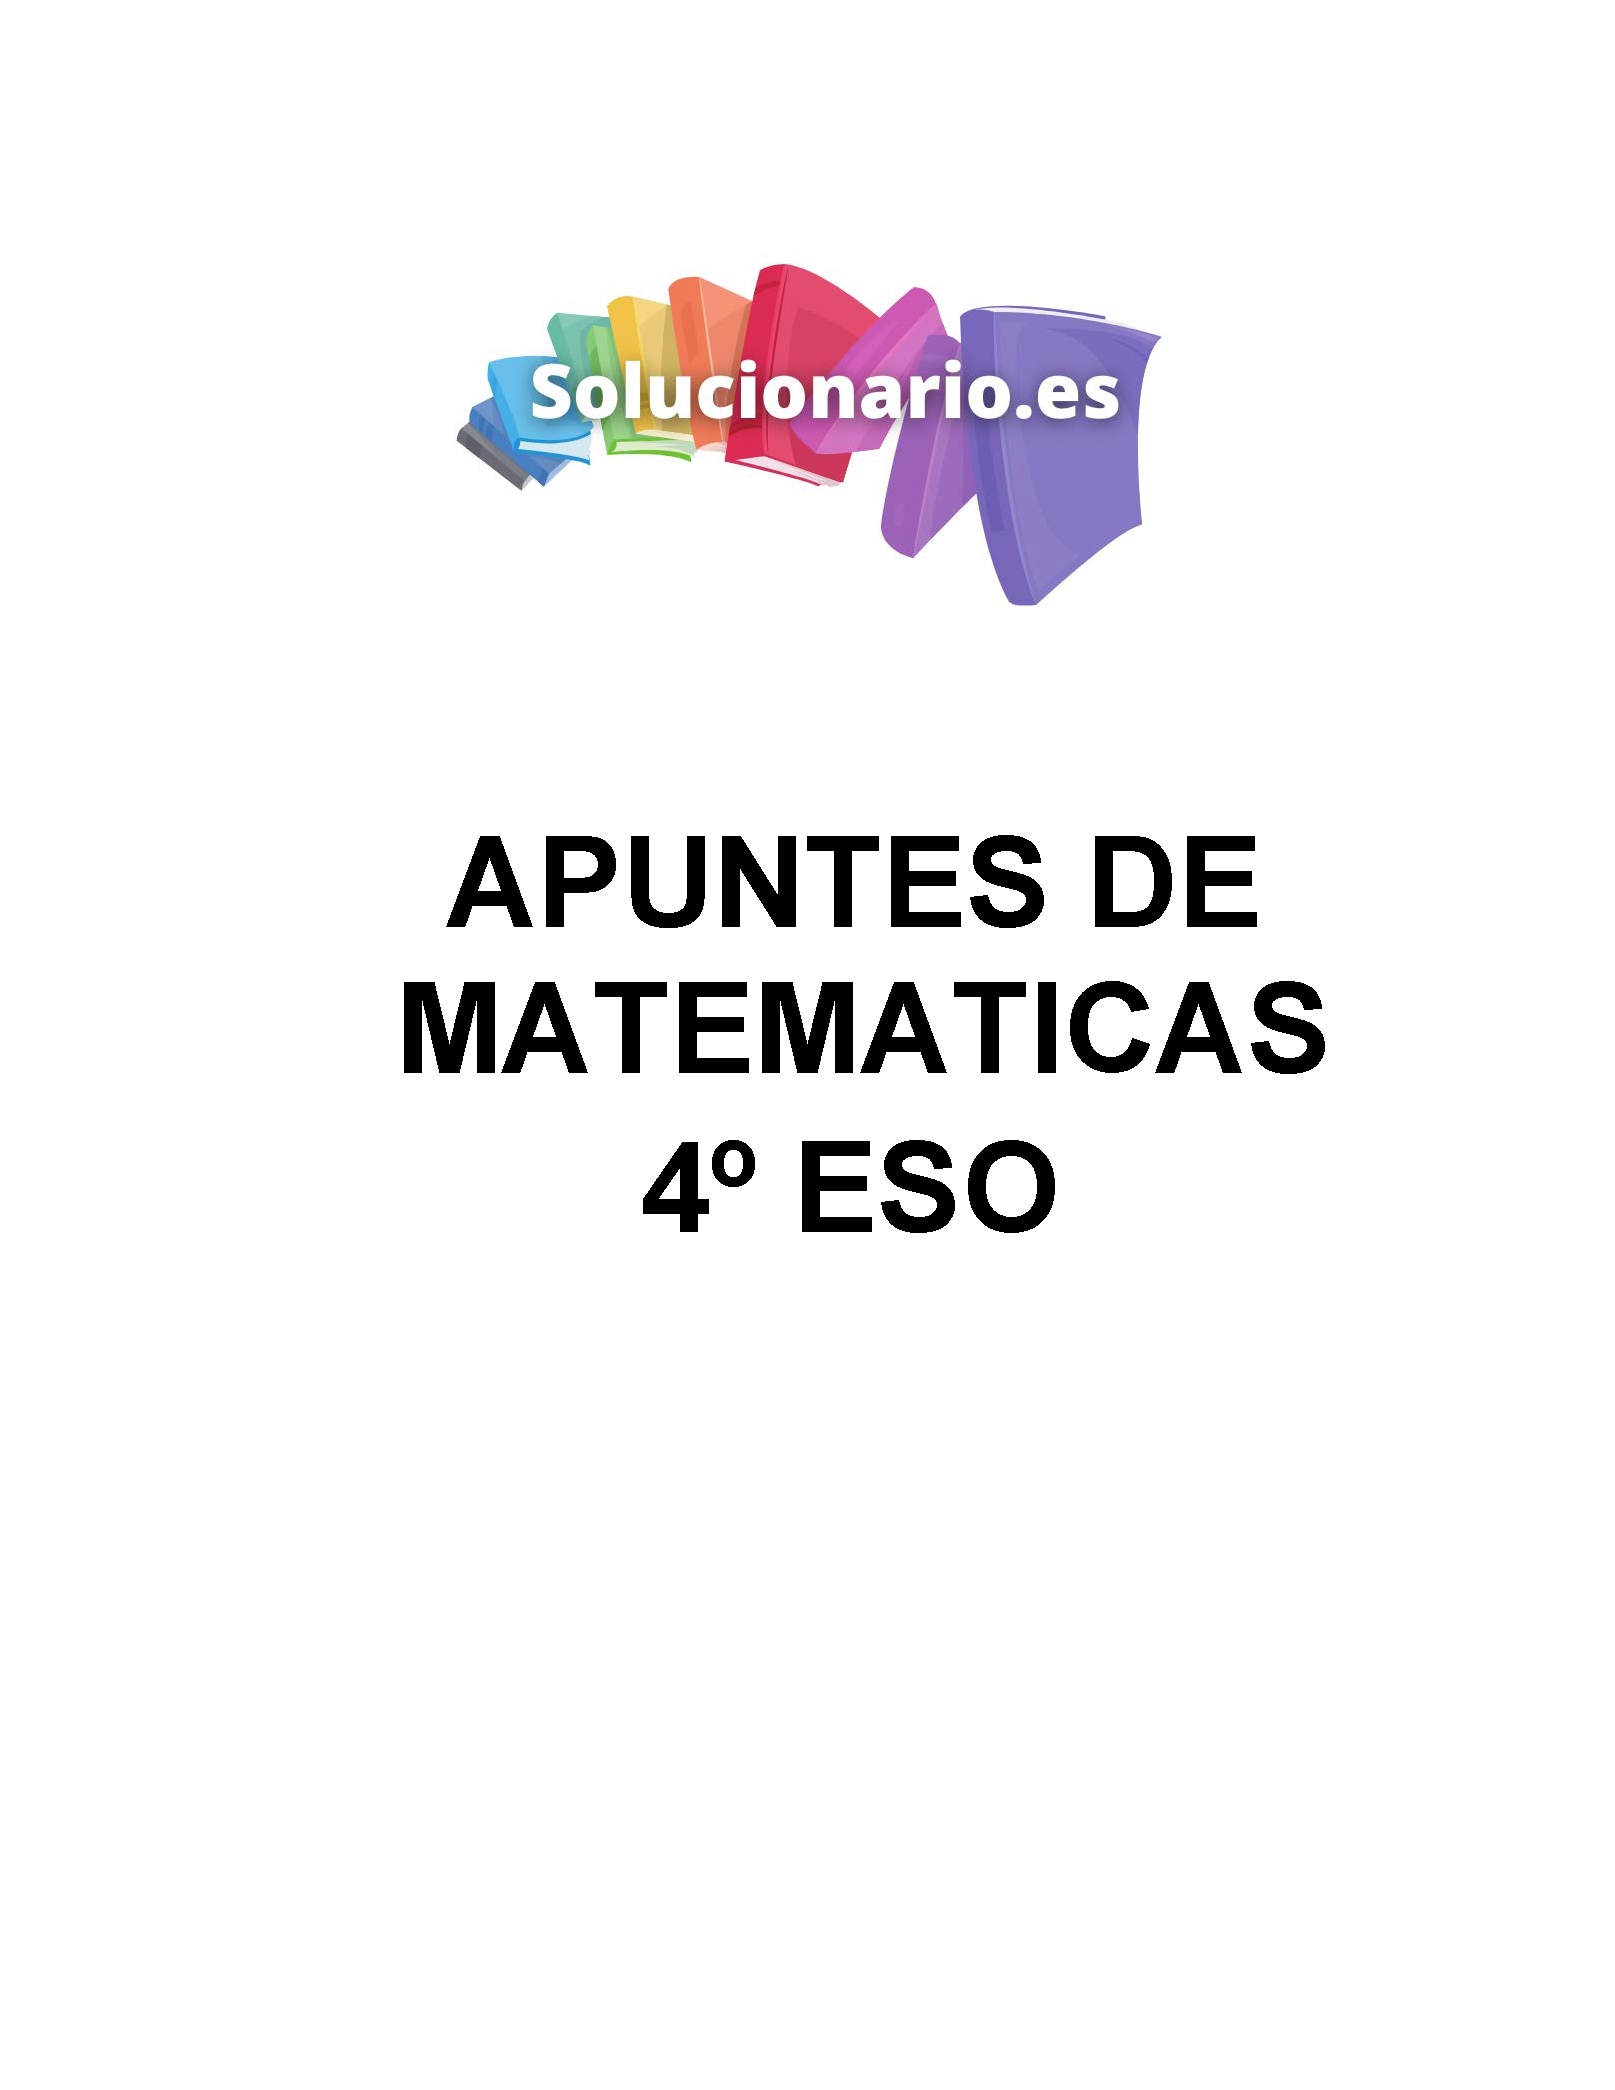 Apuntes Matemáticas Funciones y Gráficas 4 ESO 2020 / 2021